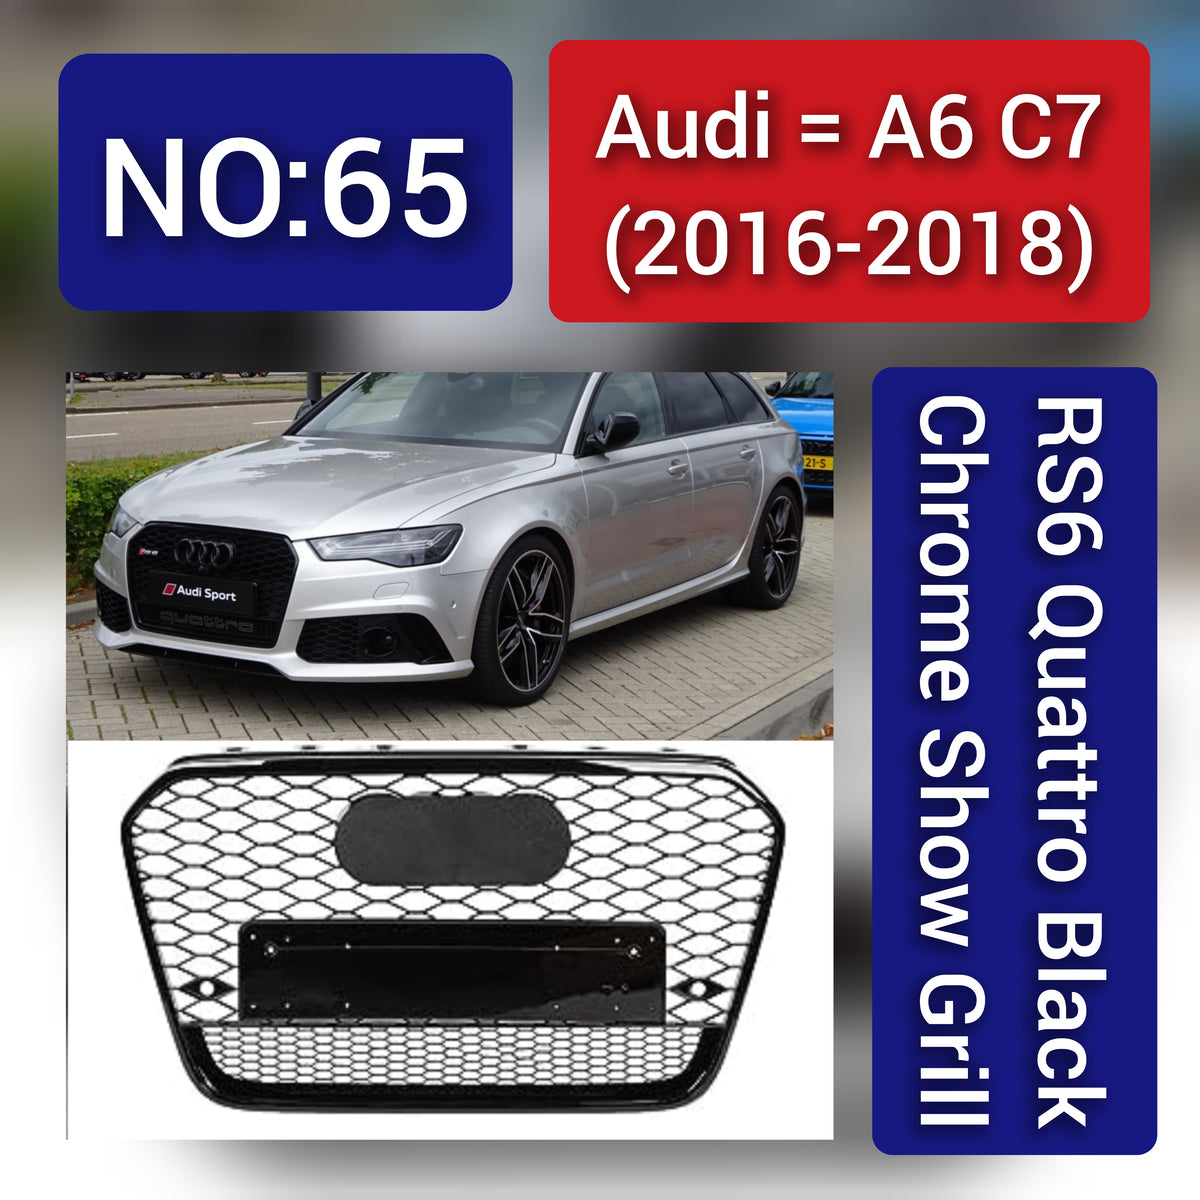 Audi A6 C7 Facelift(2016-18) RS6 Quattro Black Chrome Show Grill